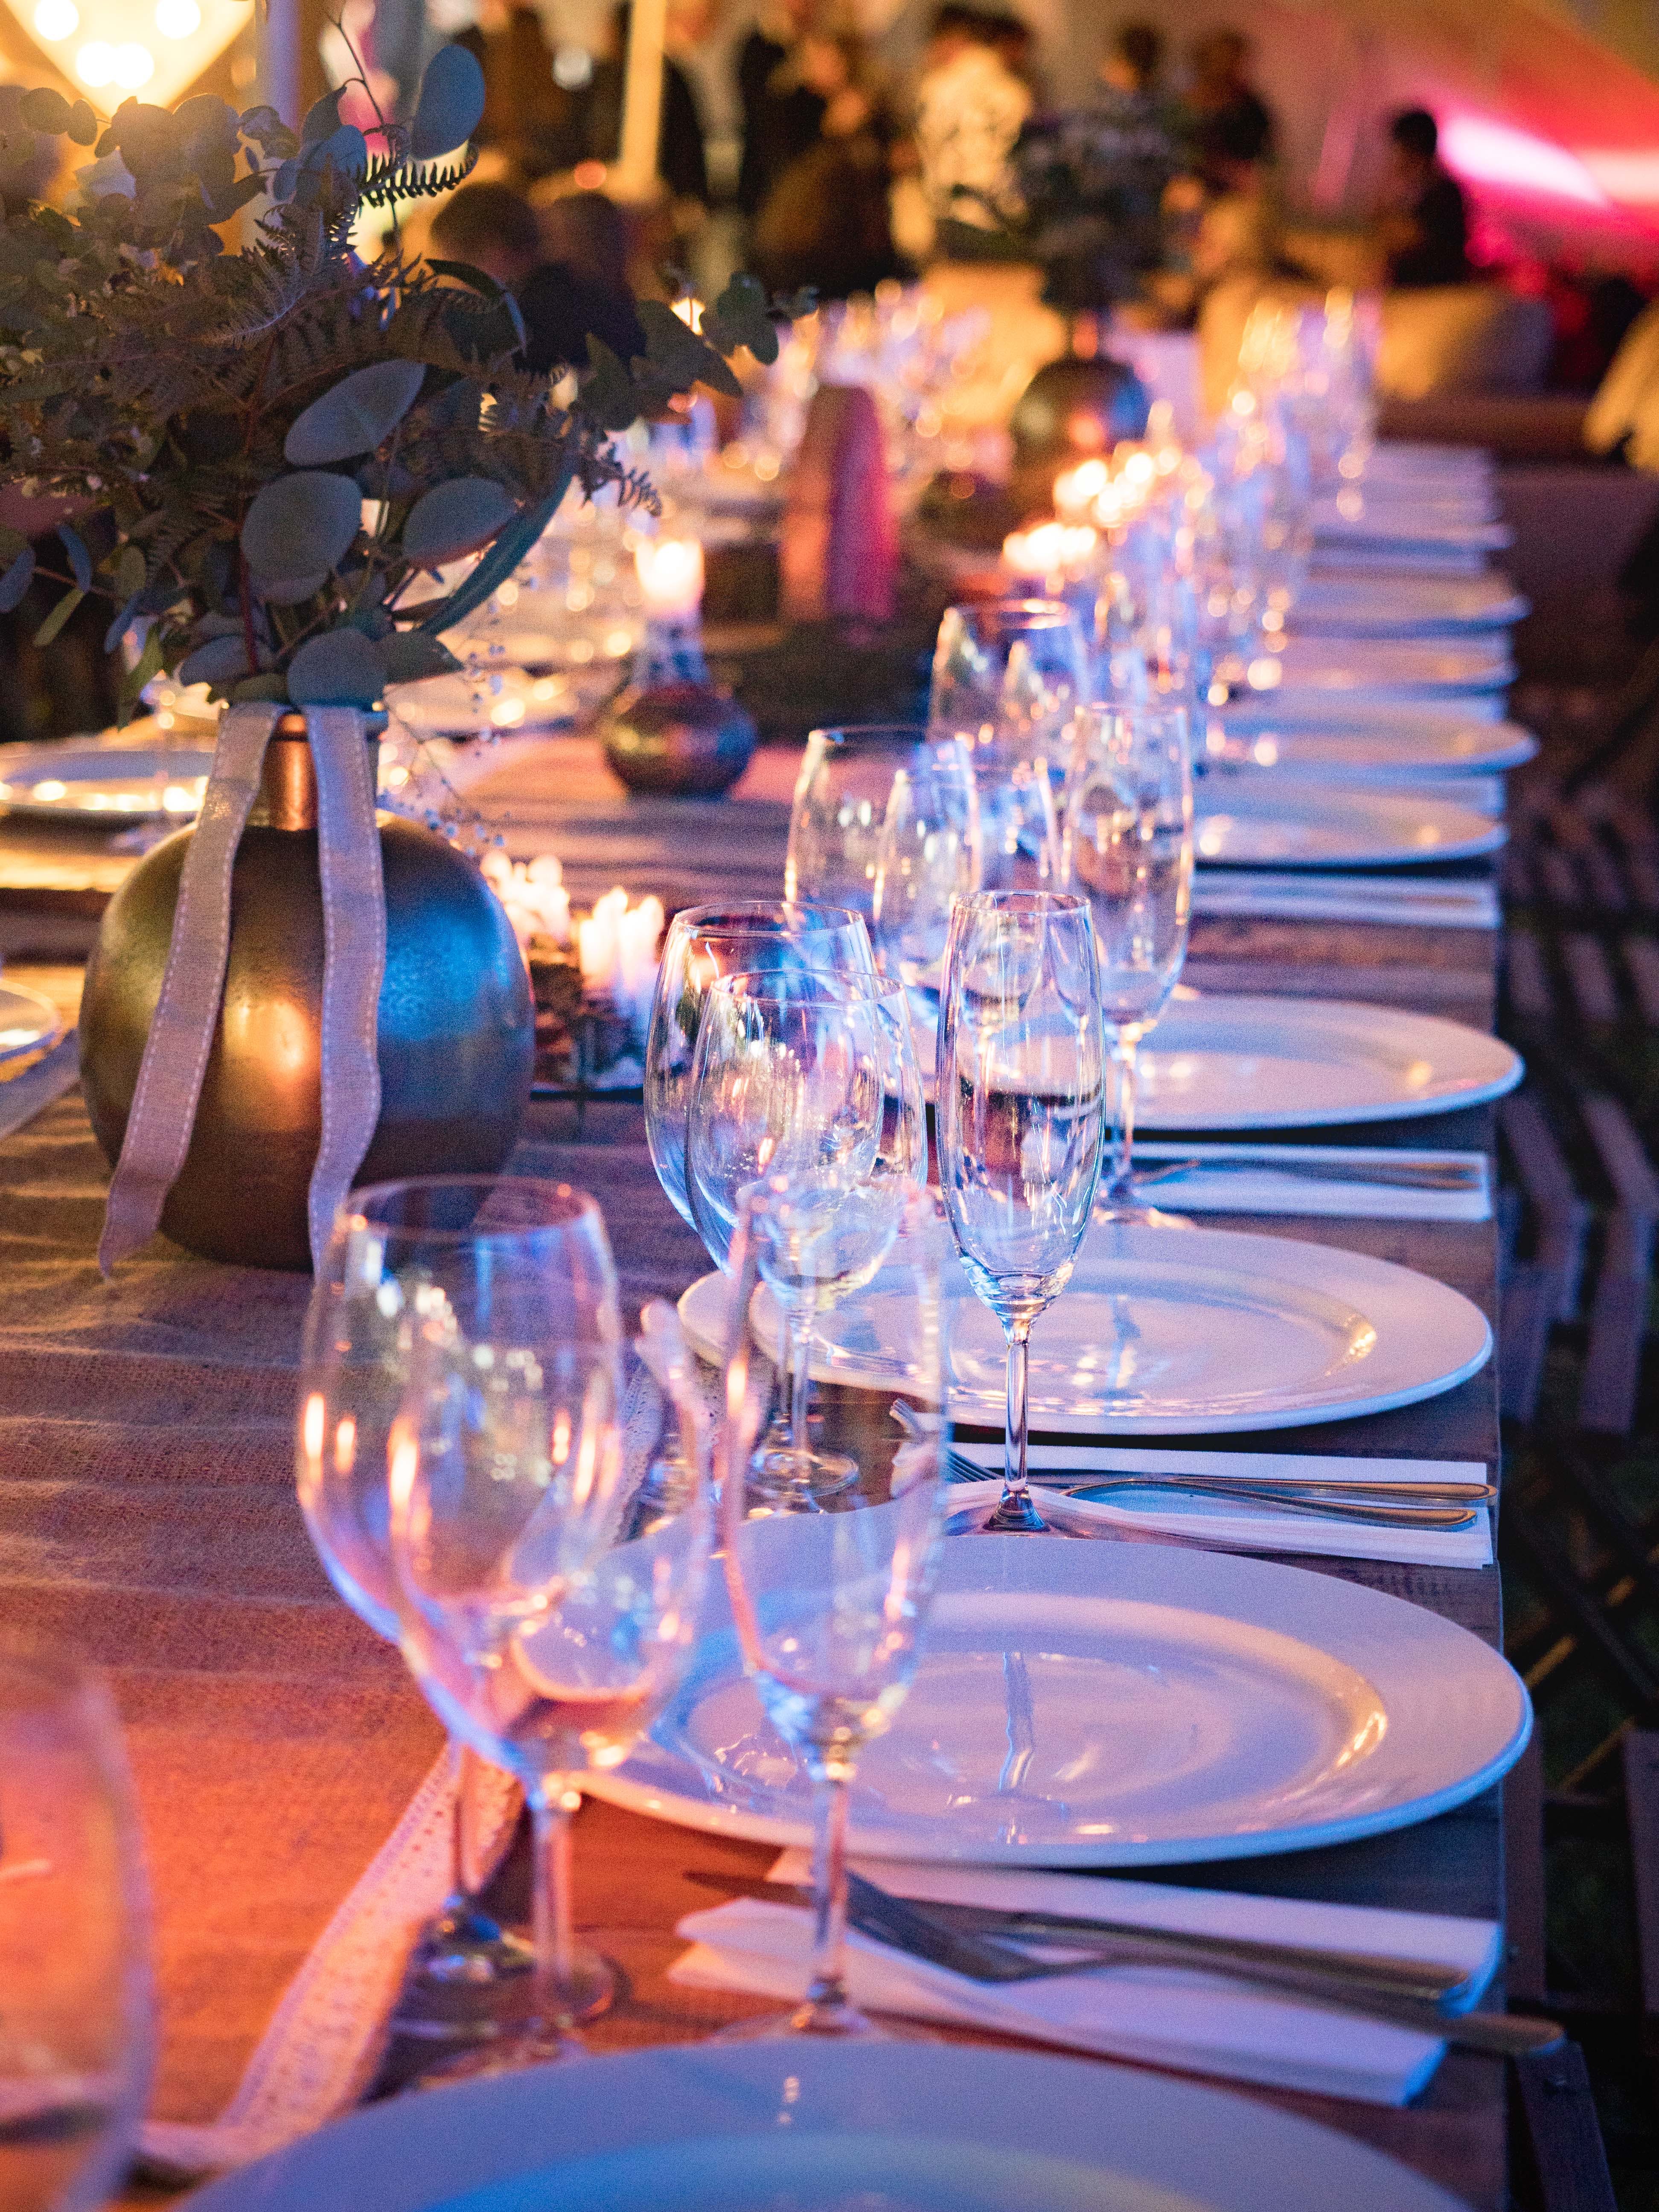 Un arrangement de table avec des verres et des assiettes lors d'un événement en plein air | Source : Pexels